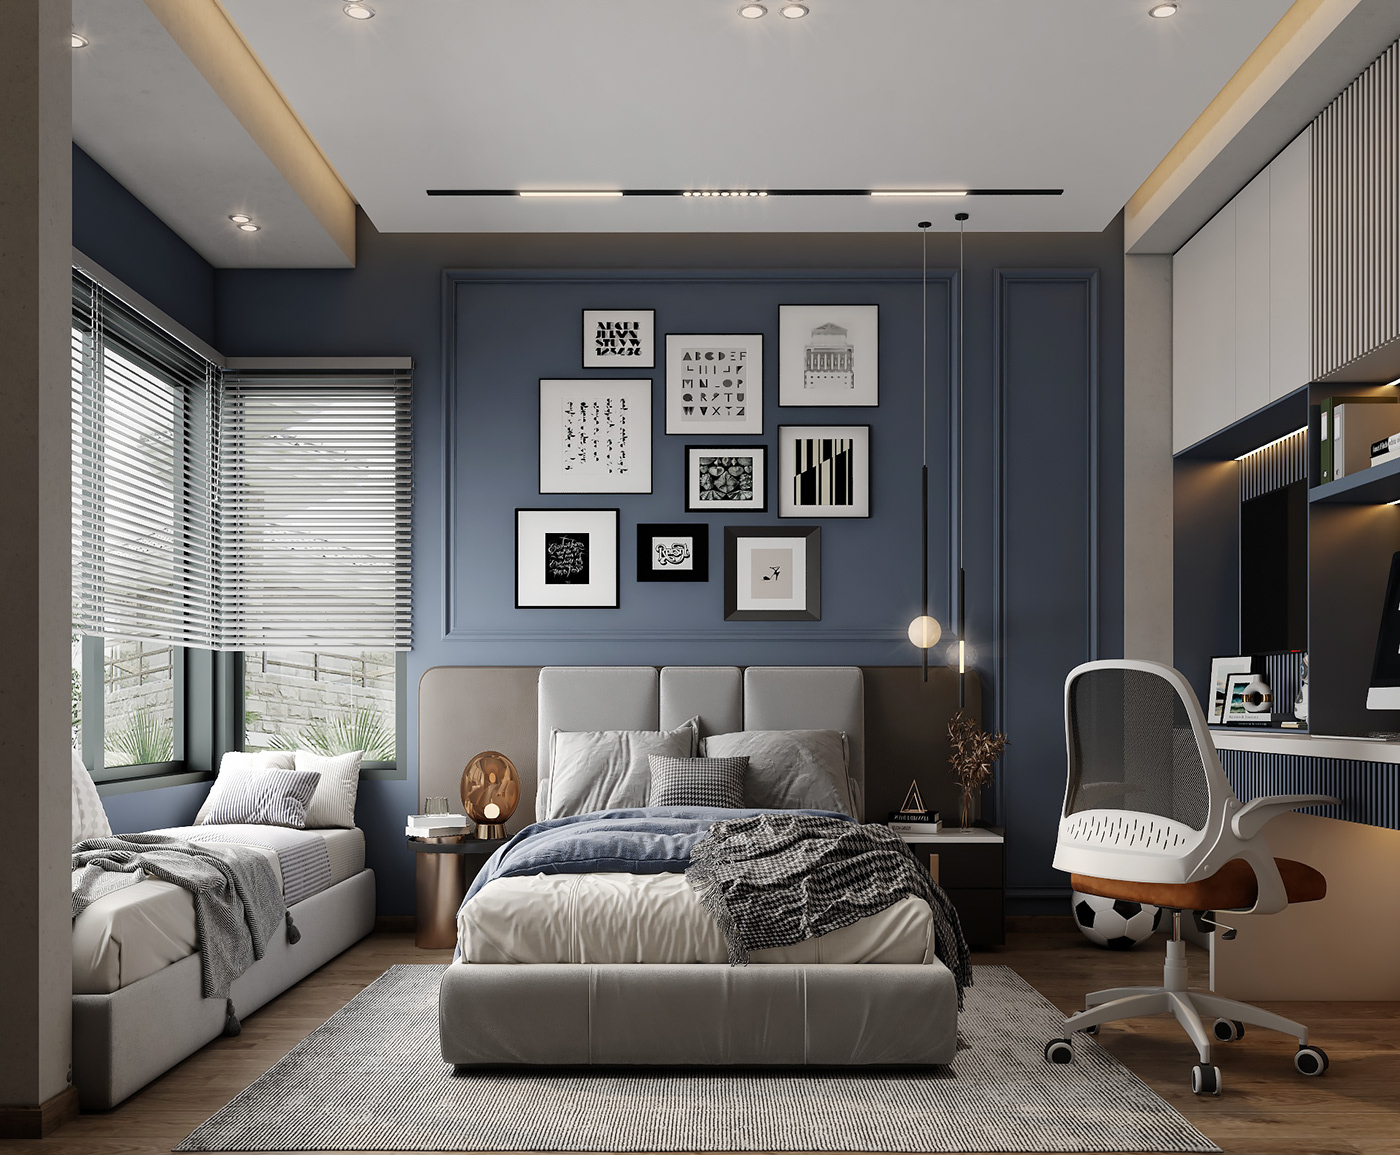 3ds max architecture blue boybedroom interior design  modern visualization vray Unique